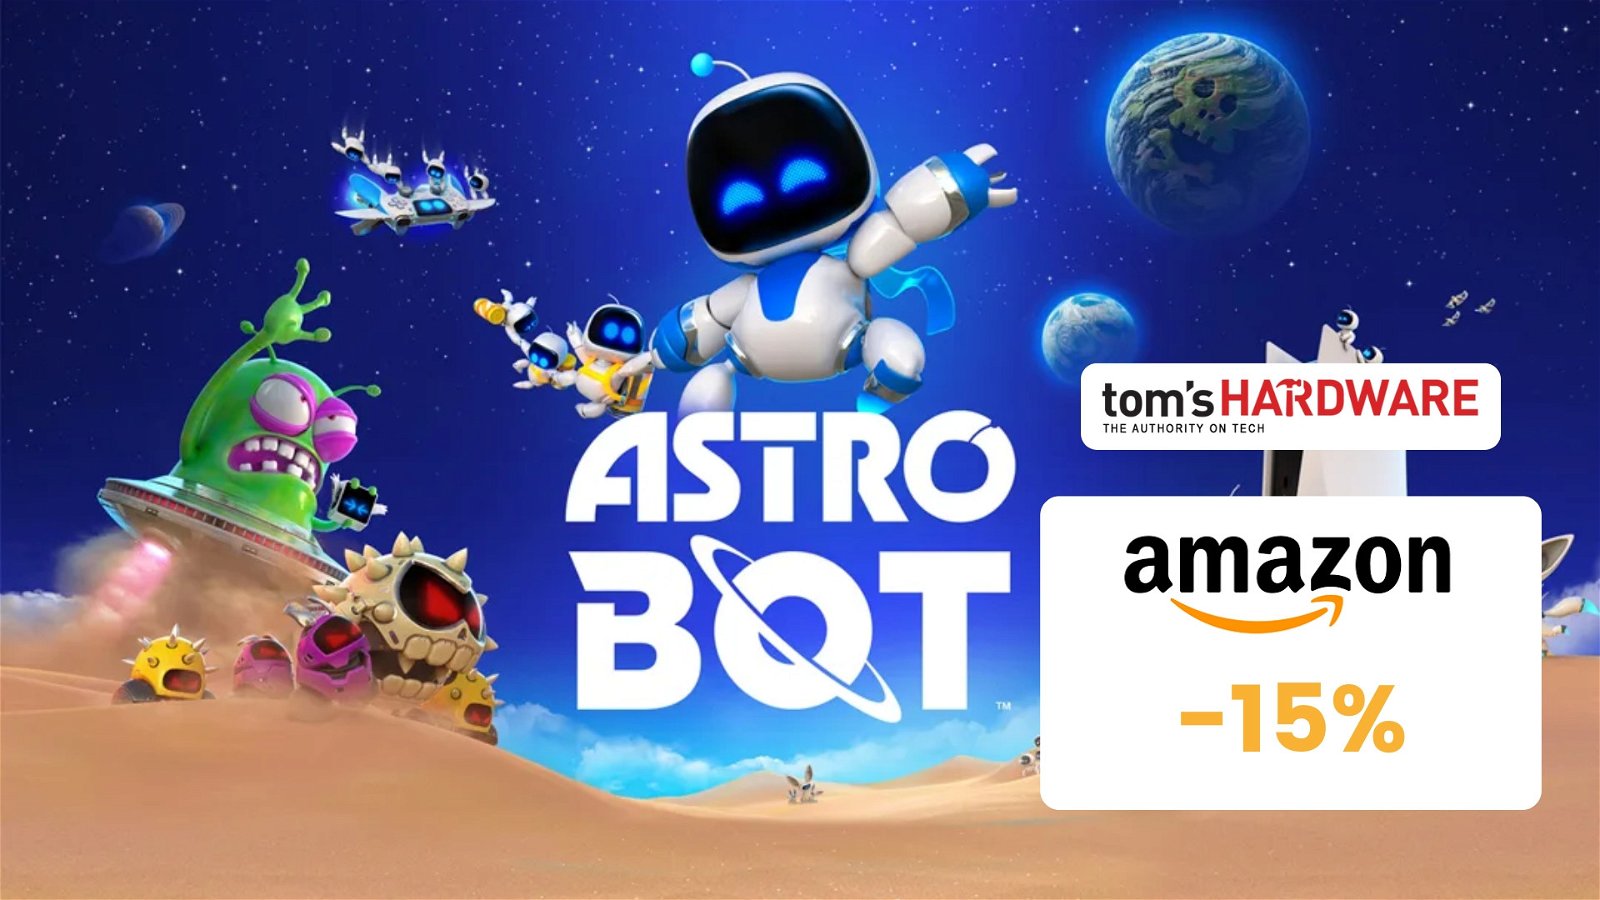 Immagine di Astro Bot: pre-order già in sconto su Amazon! (-15%)